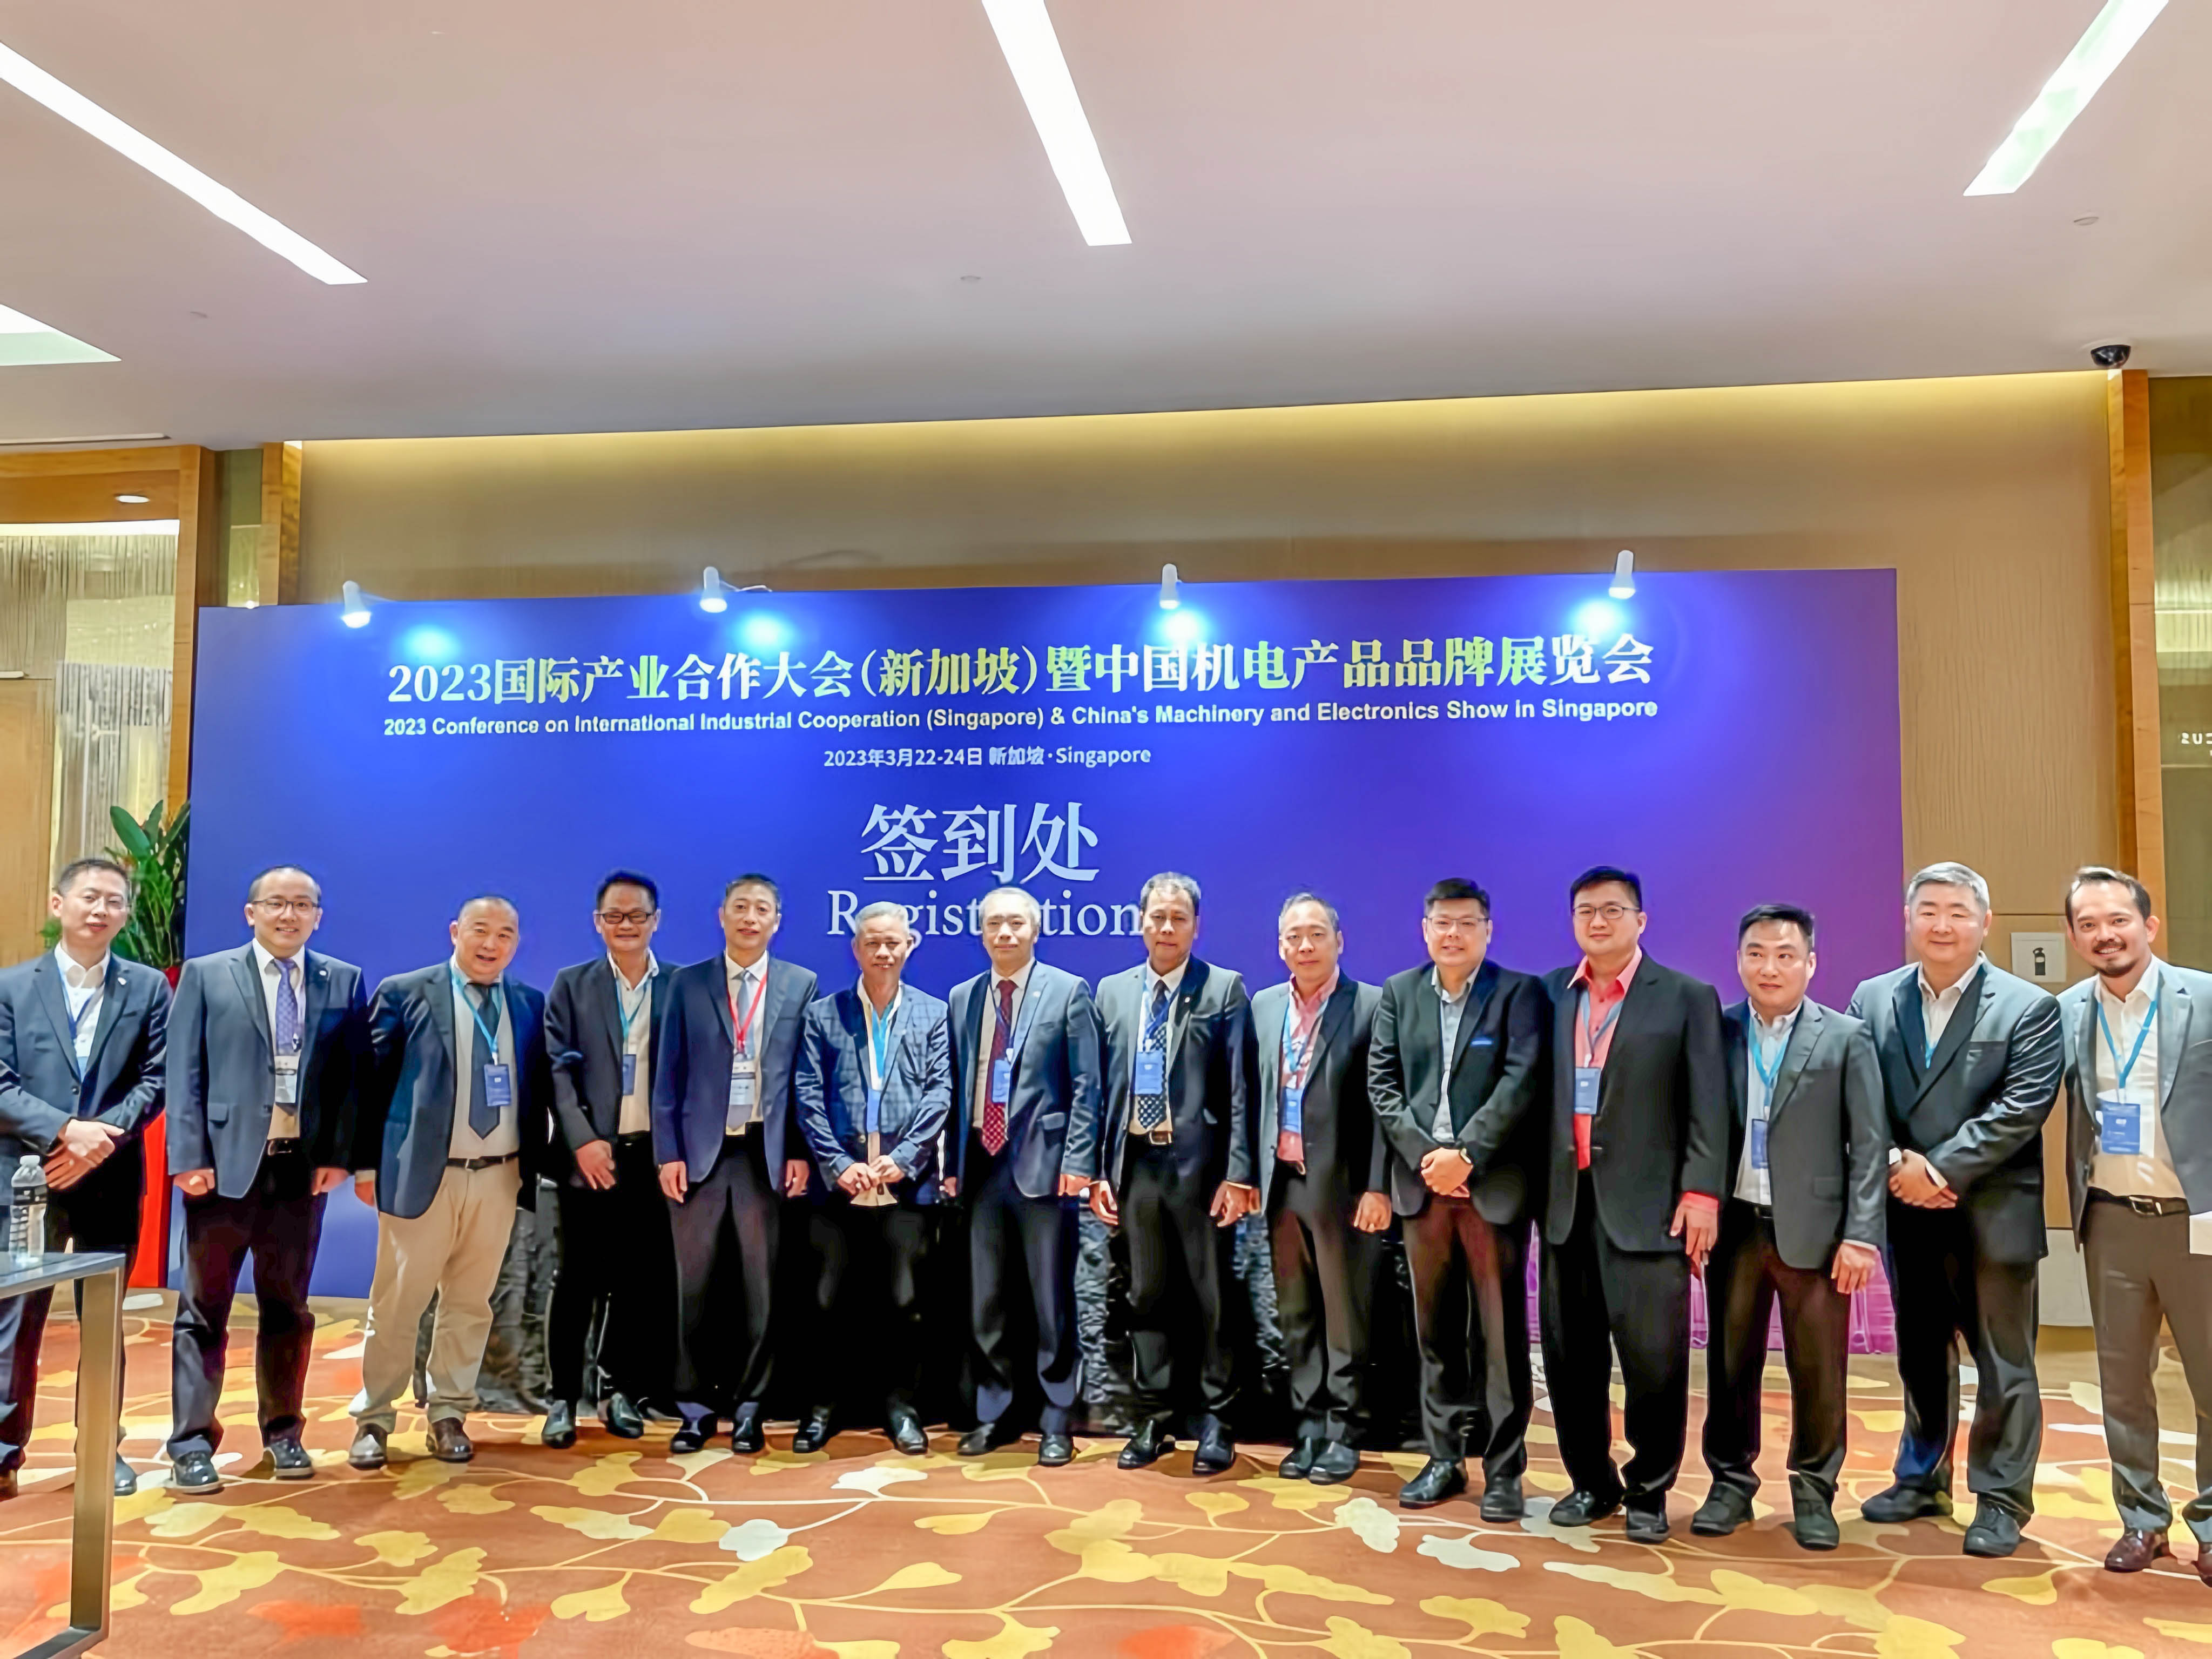 正大机电参加2023国际产业合作大会（新加坡）暨中国机电产品品牌展览会，推动国际化合作发展